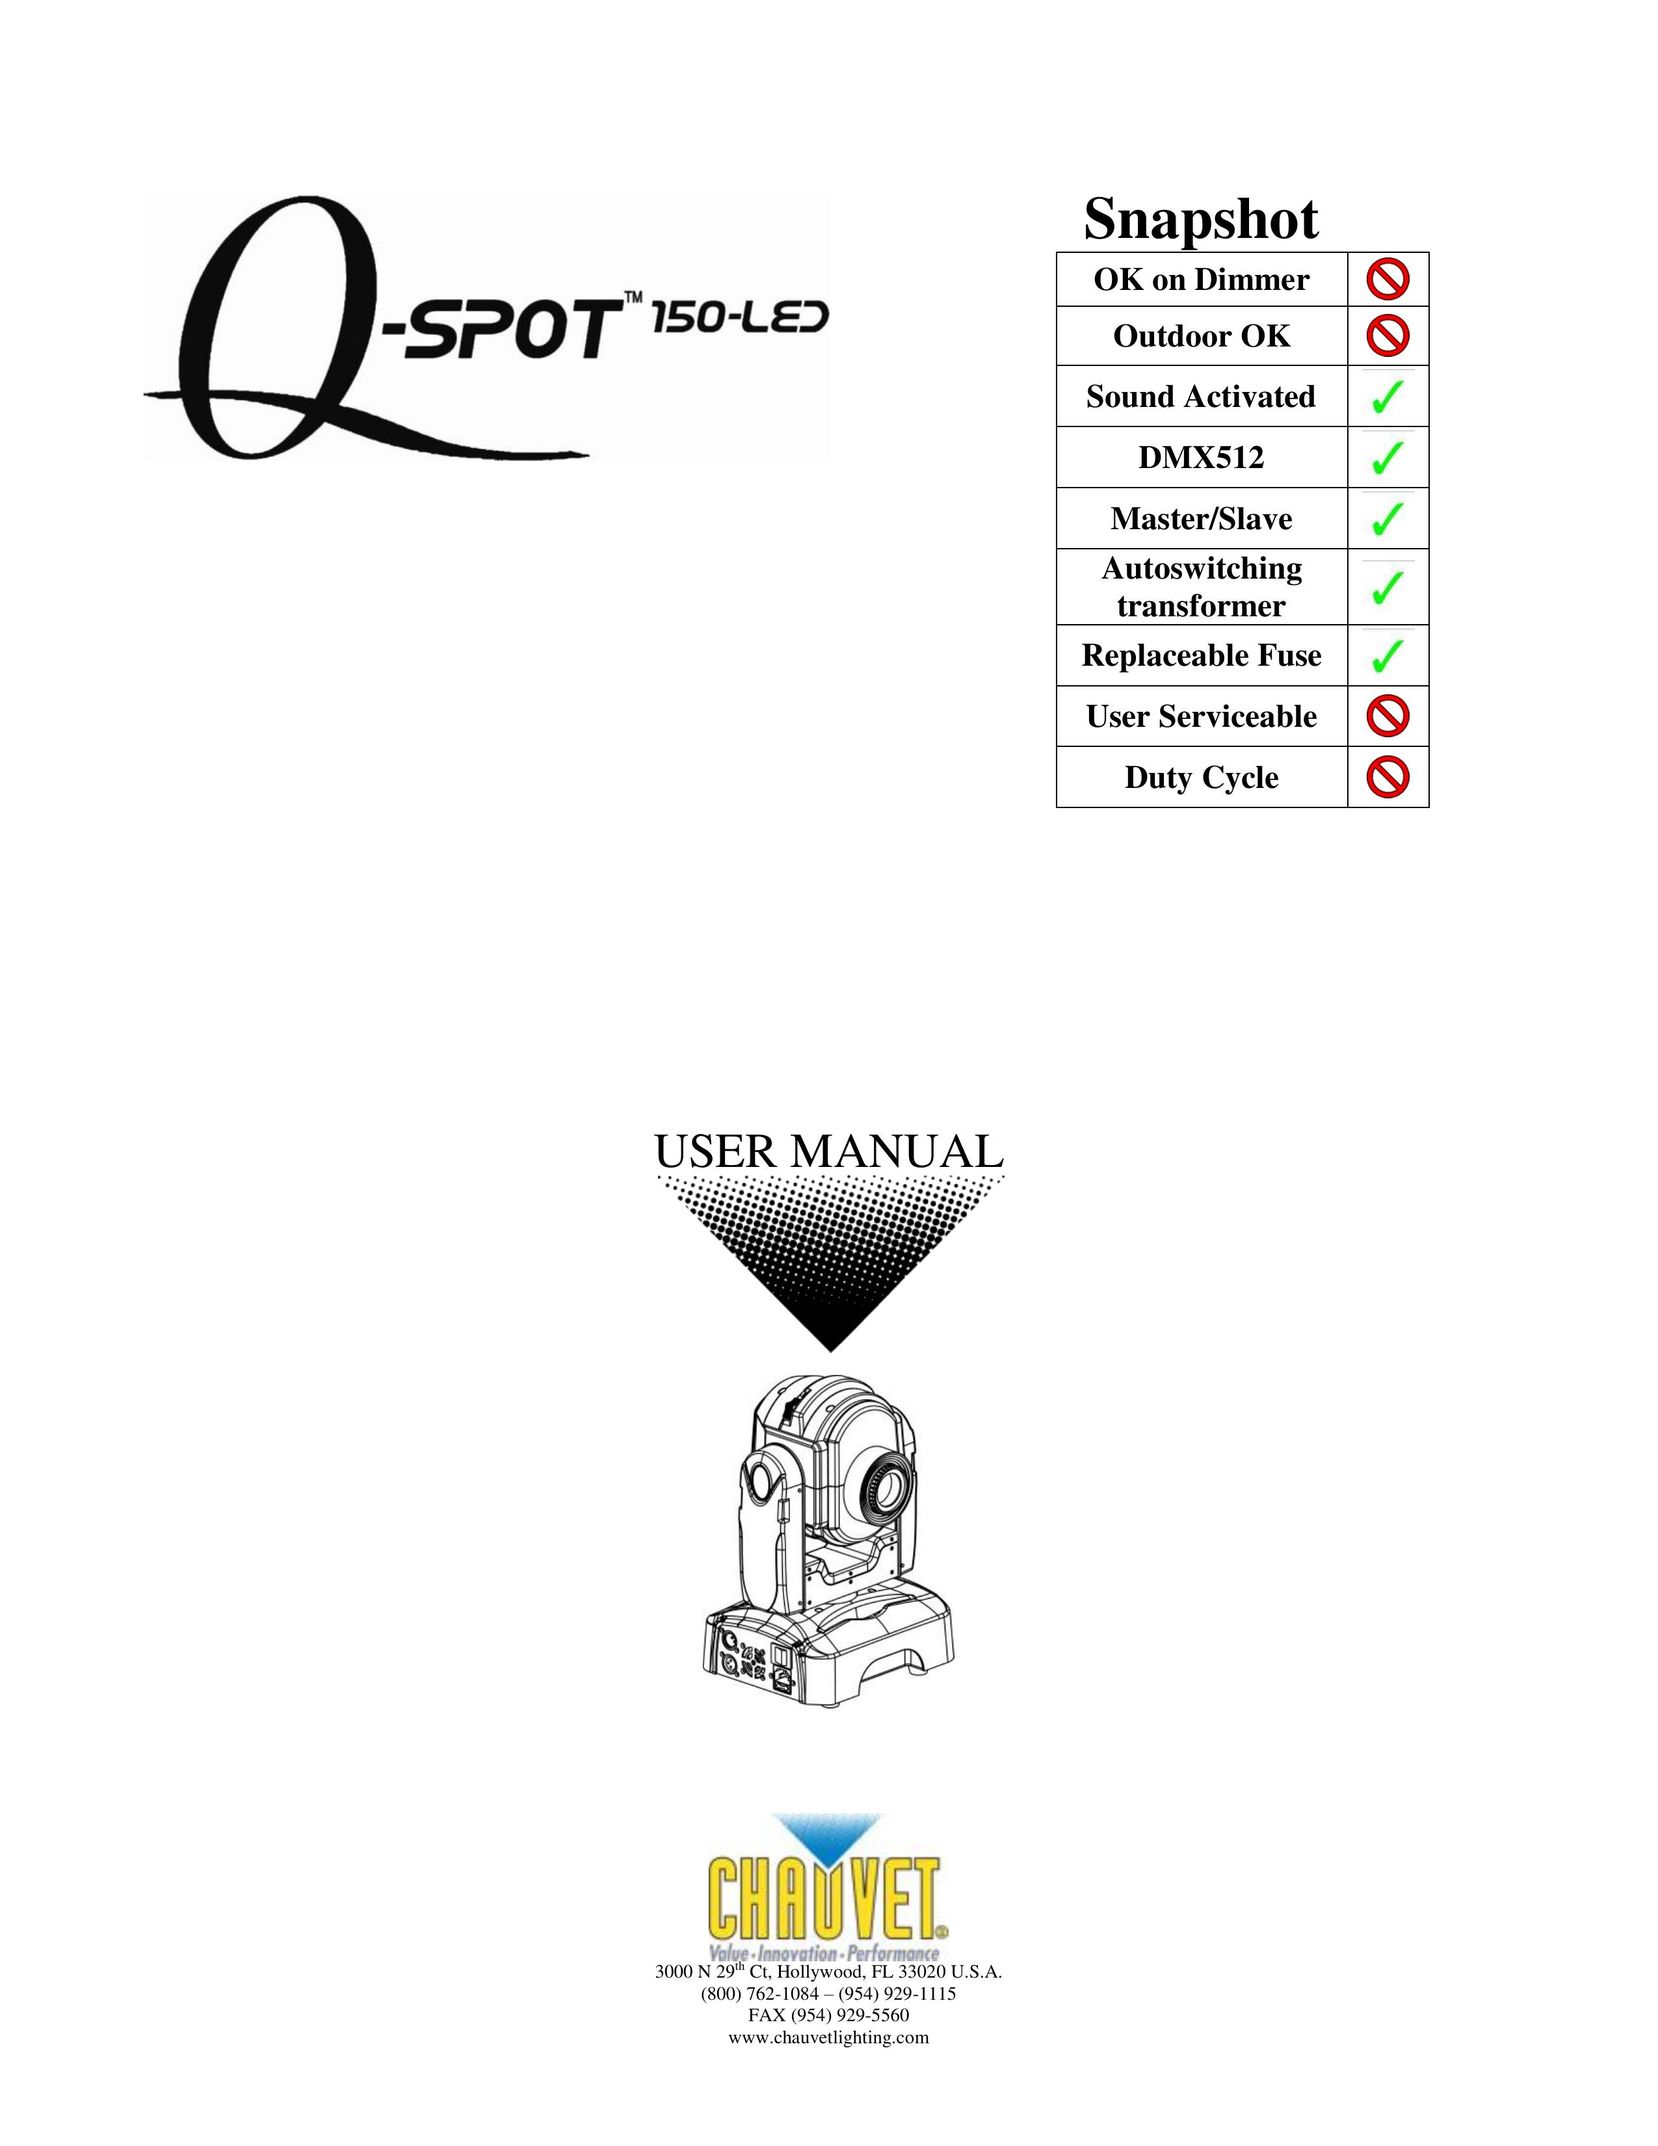 Chauvet QSPOT Work Light User Manual